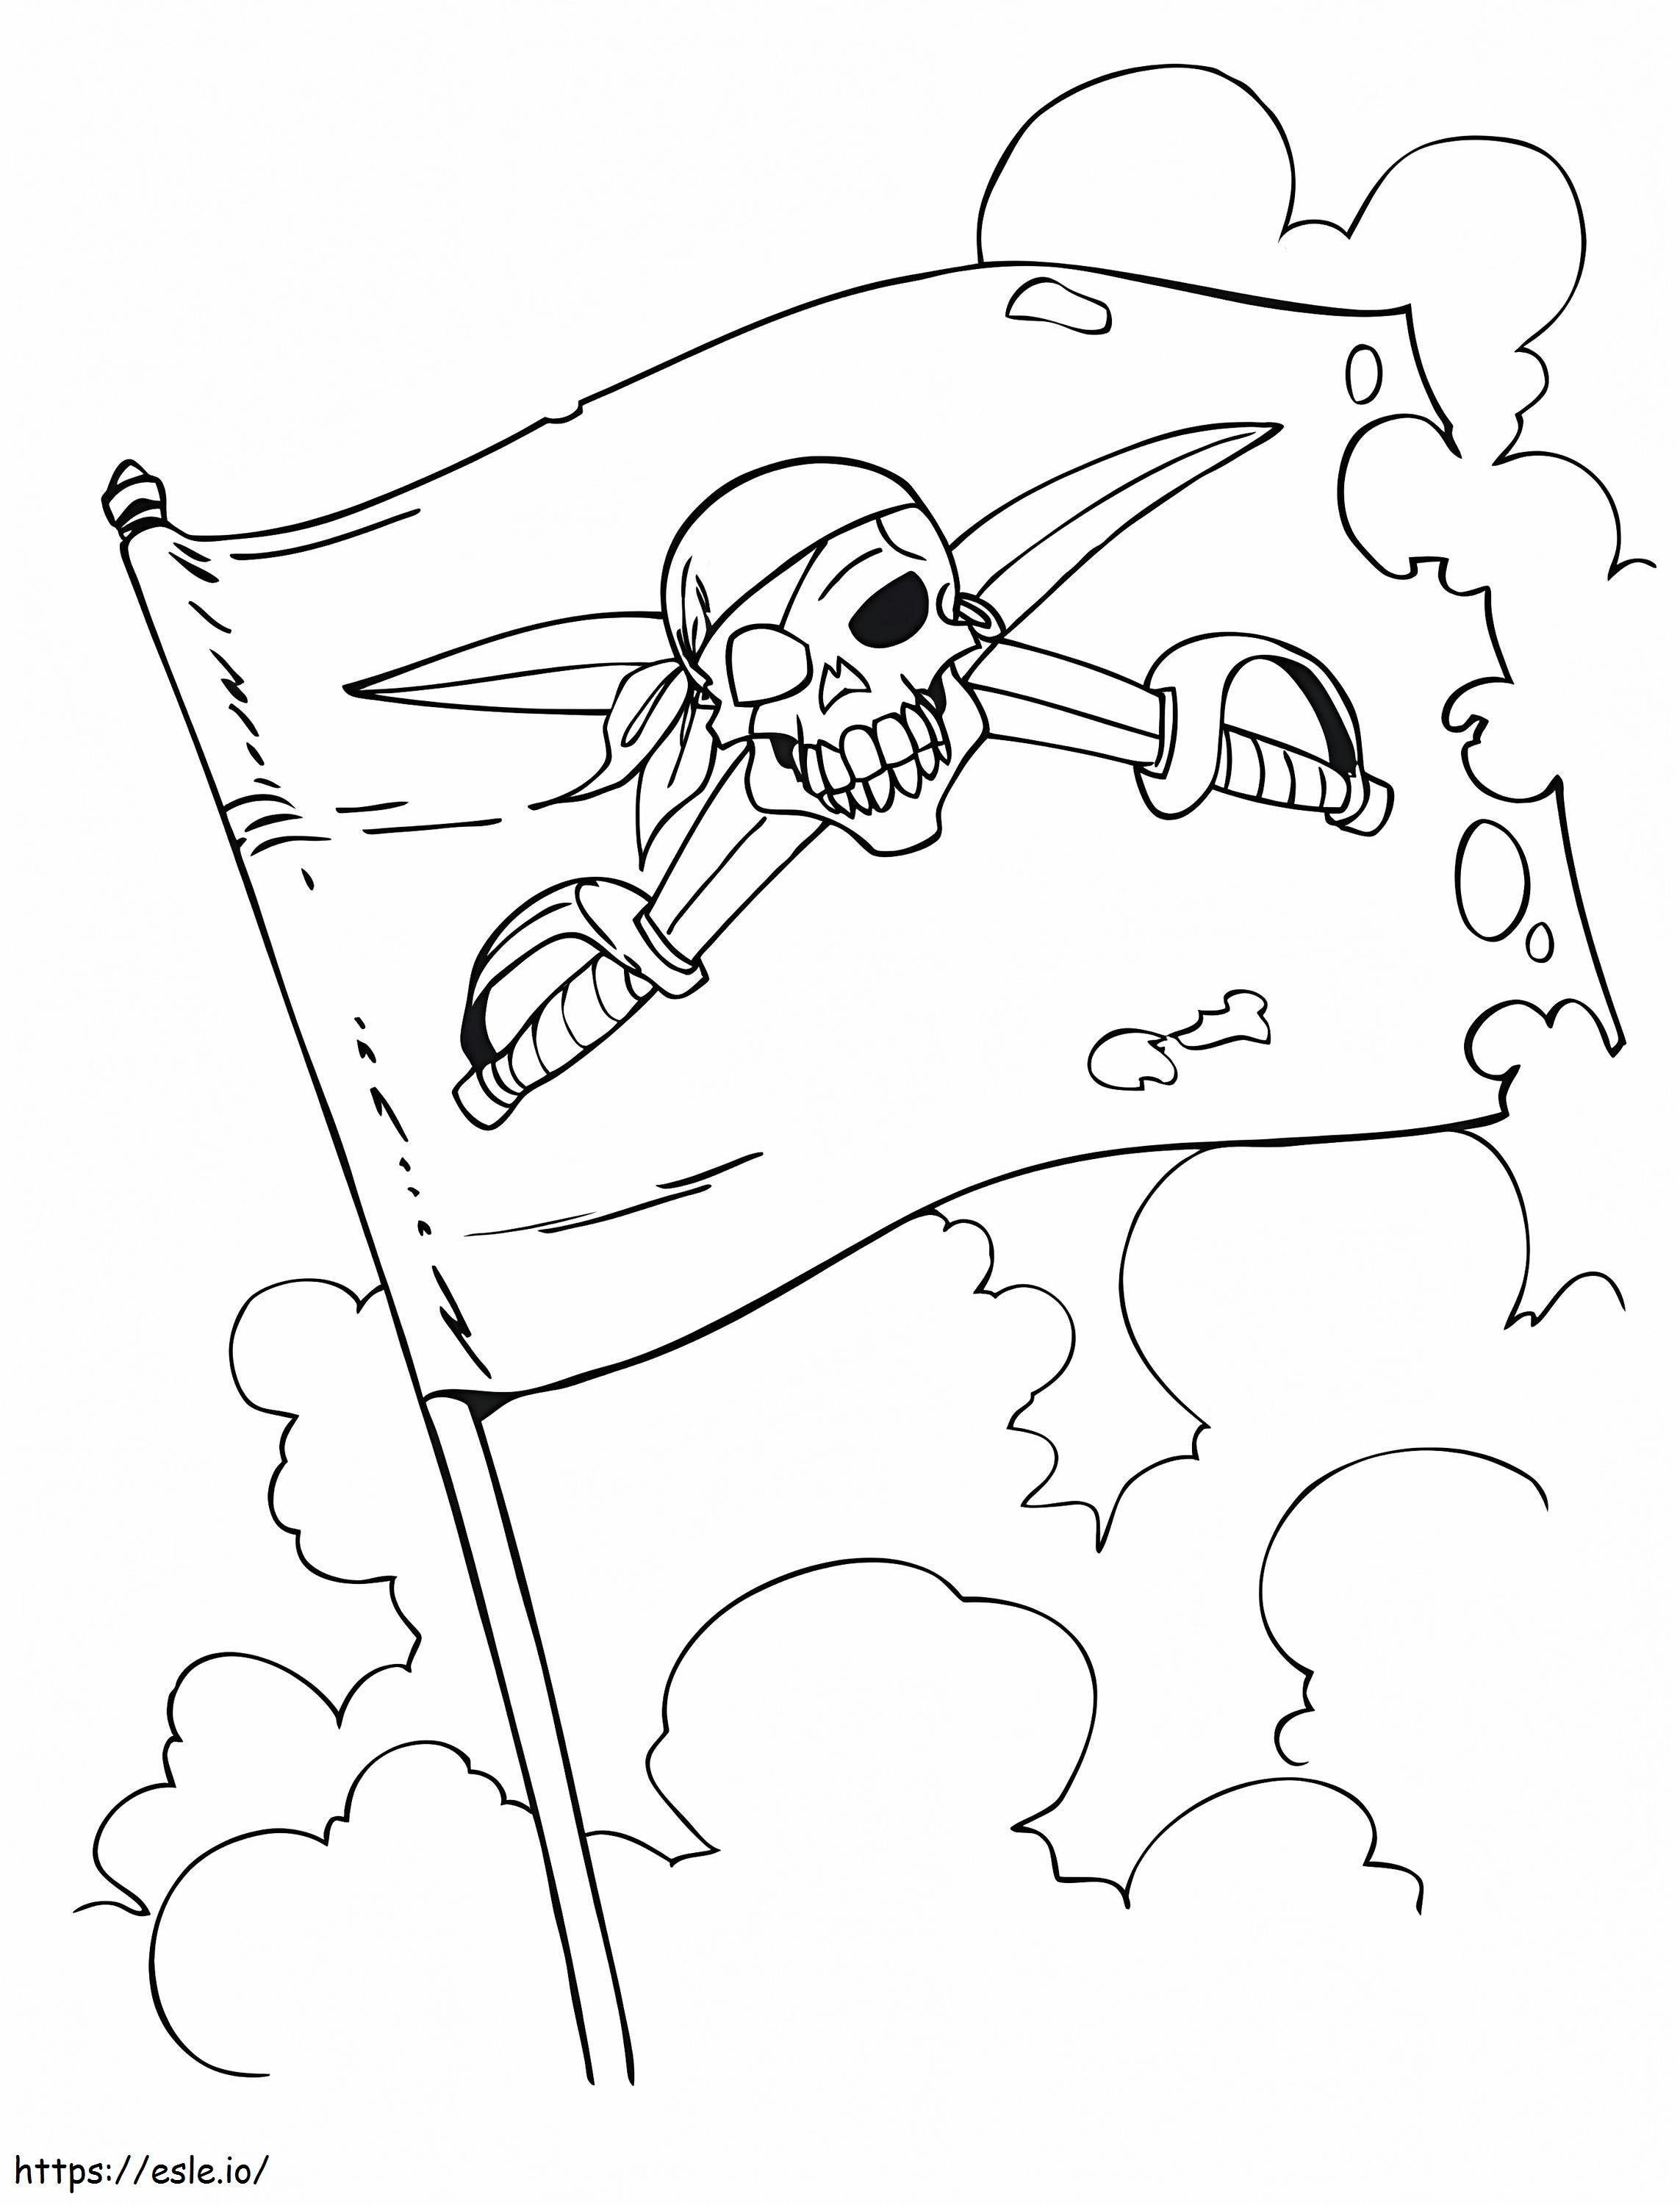 Uma bandeira pirata para colorir